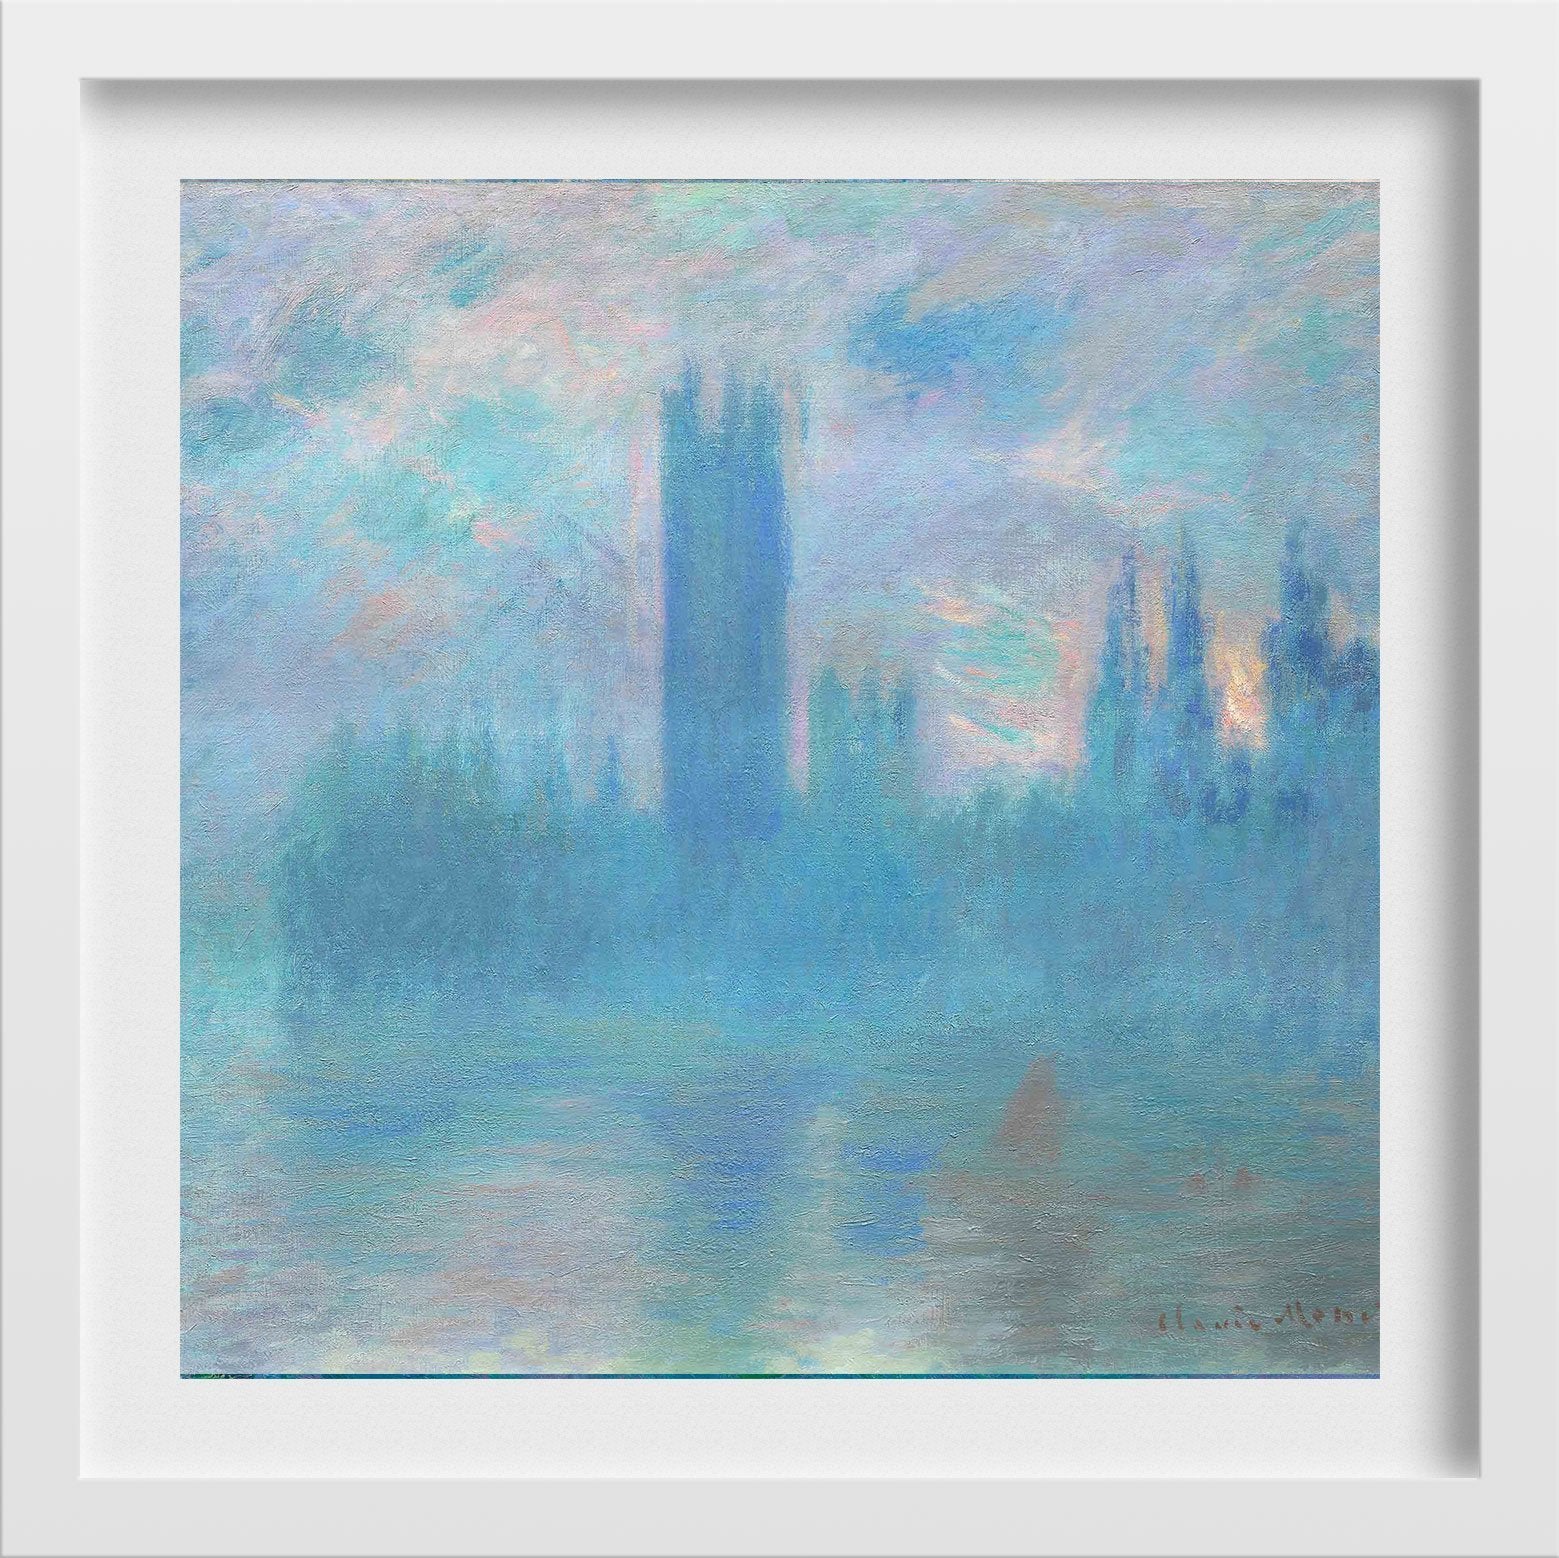 The Houses of Parliament In London By Claude Monet Painting - Meri Deewar - MeriDeewar